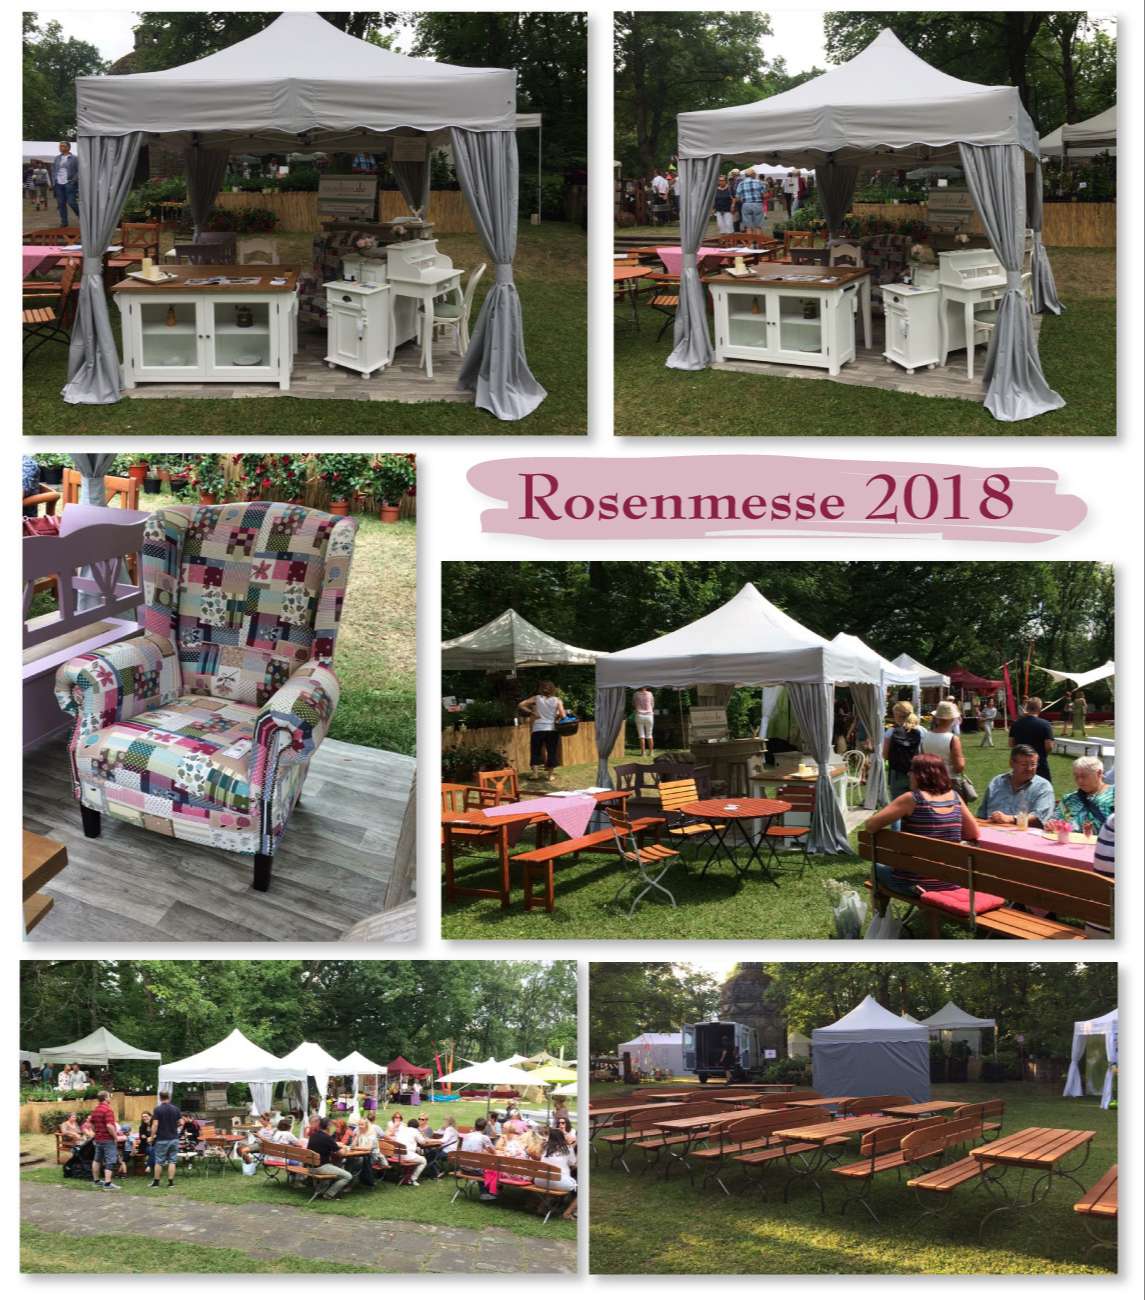 Rosenmesse 2018